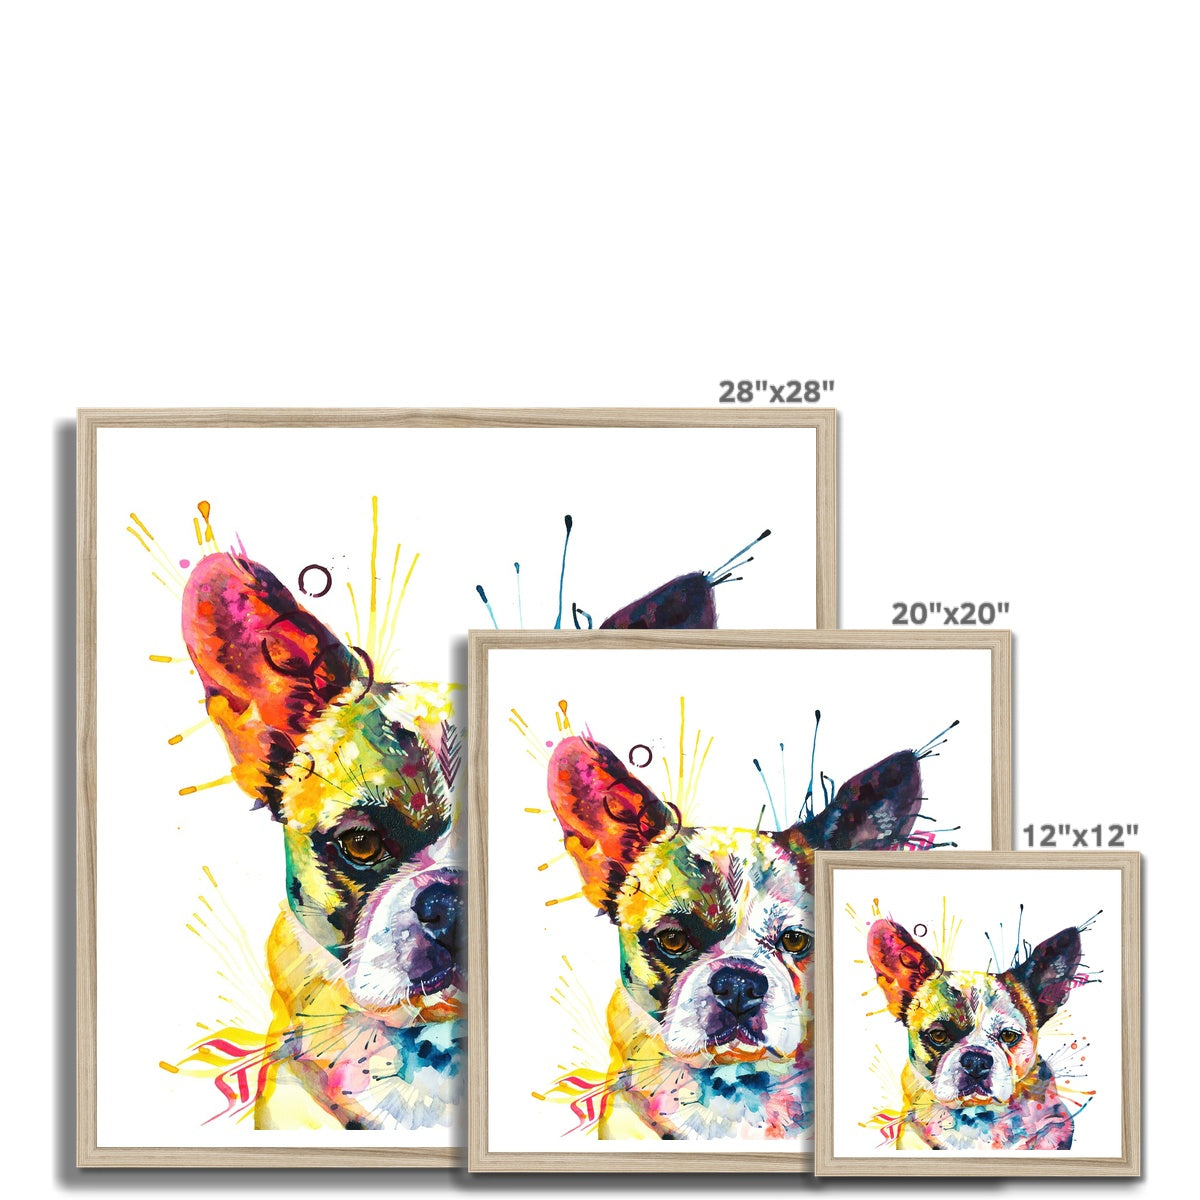 Ludo the Bullnese (French Bulldog x Pekingnese) Framed Print